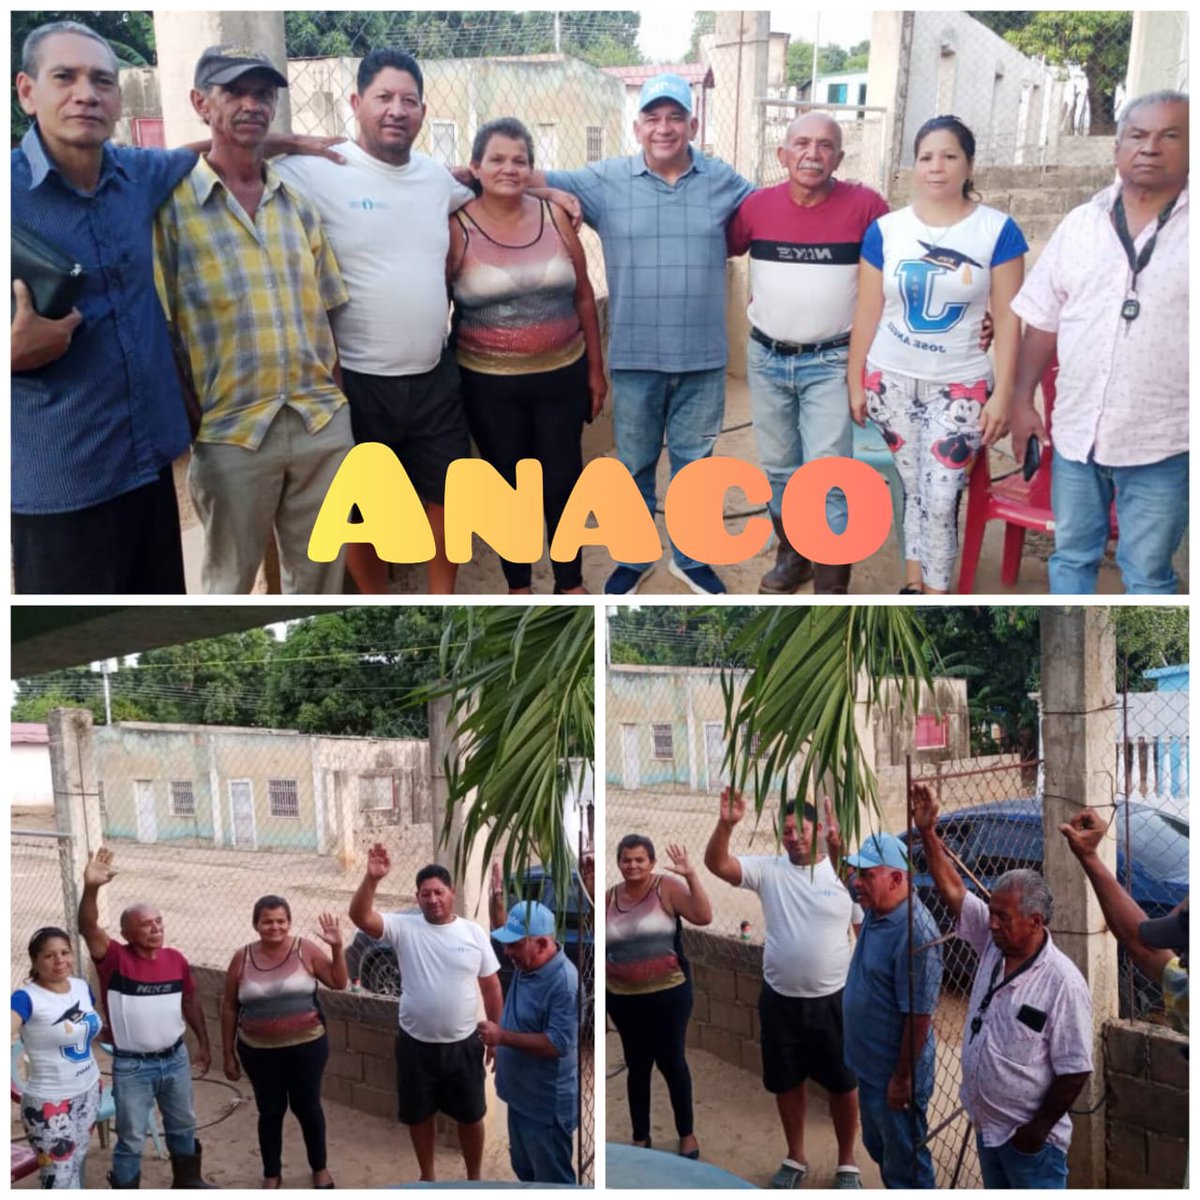 Un nuevo Comandito fue constituido en el Sector Ocana de Bello Monte, municipio Anaco del estado Anzoátegui, para asegurar la victoria del candidato de María Corina Machado, Edmundo González Urrutia.